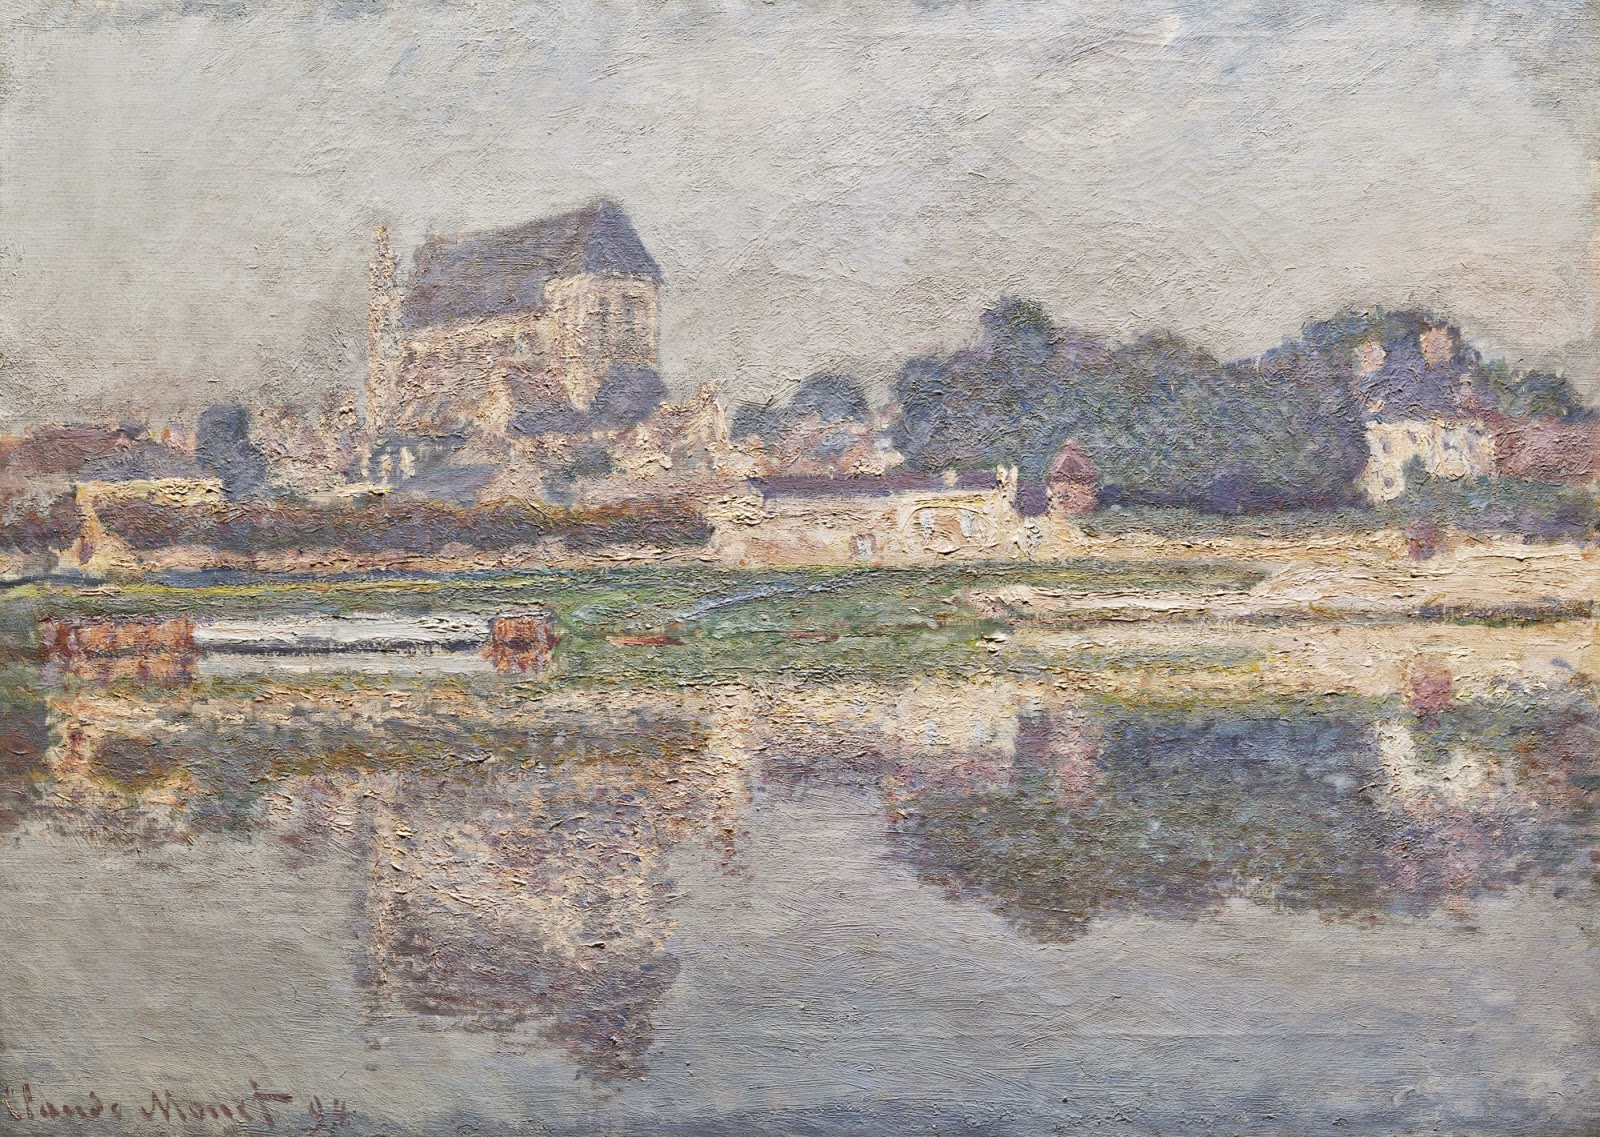 Claude+Monet-1840-1926 (375).jpeg